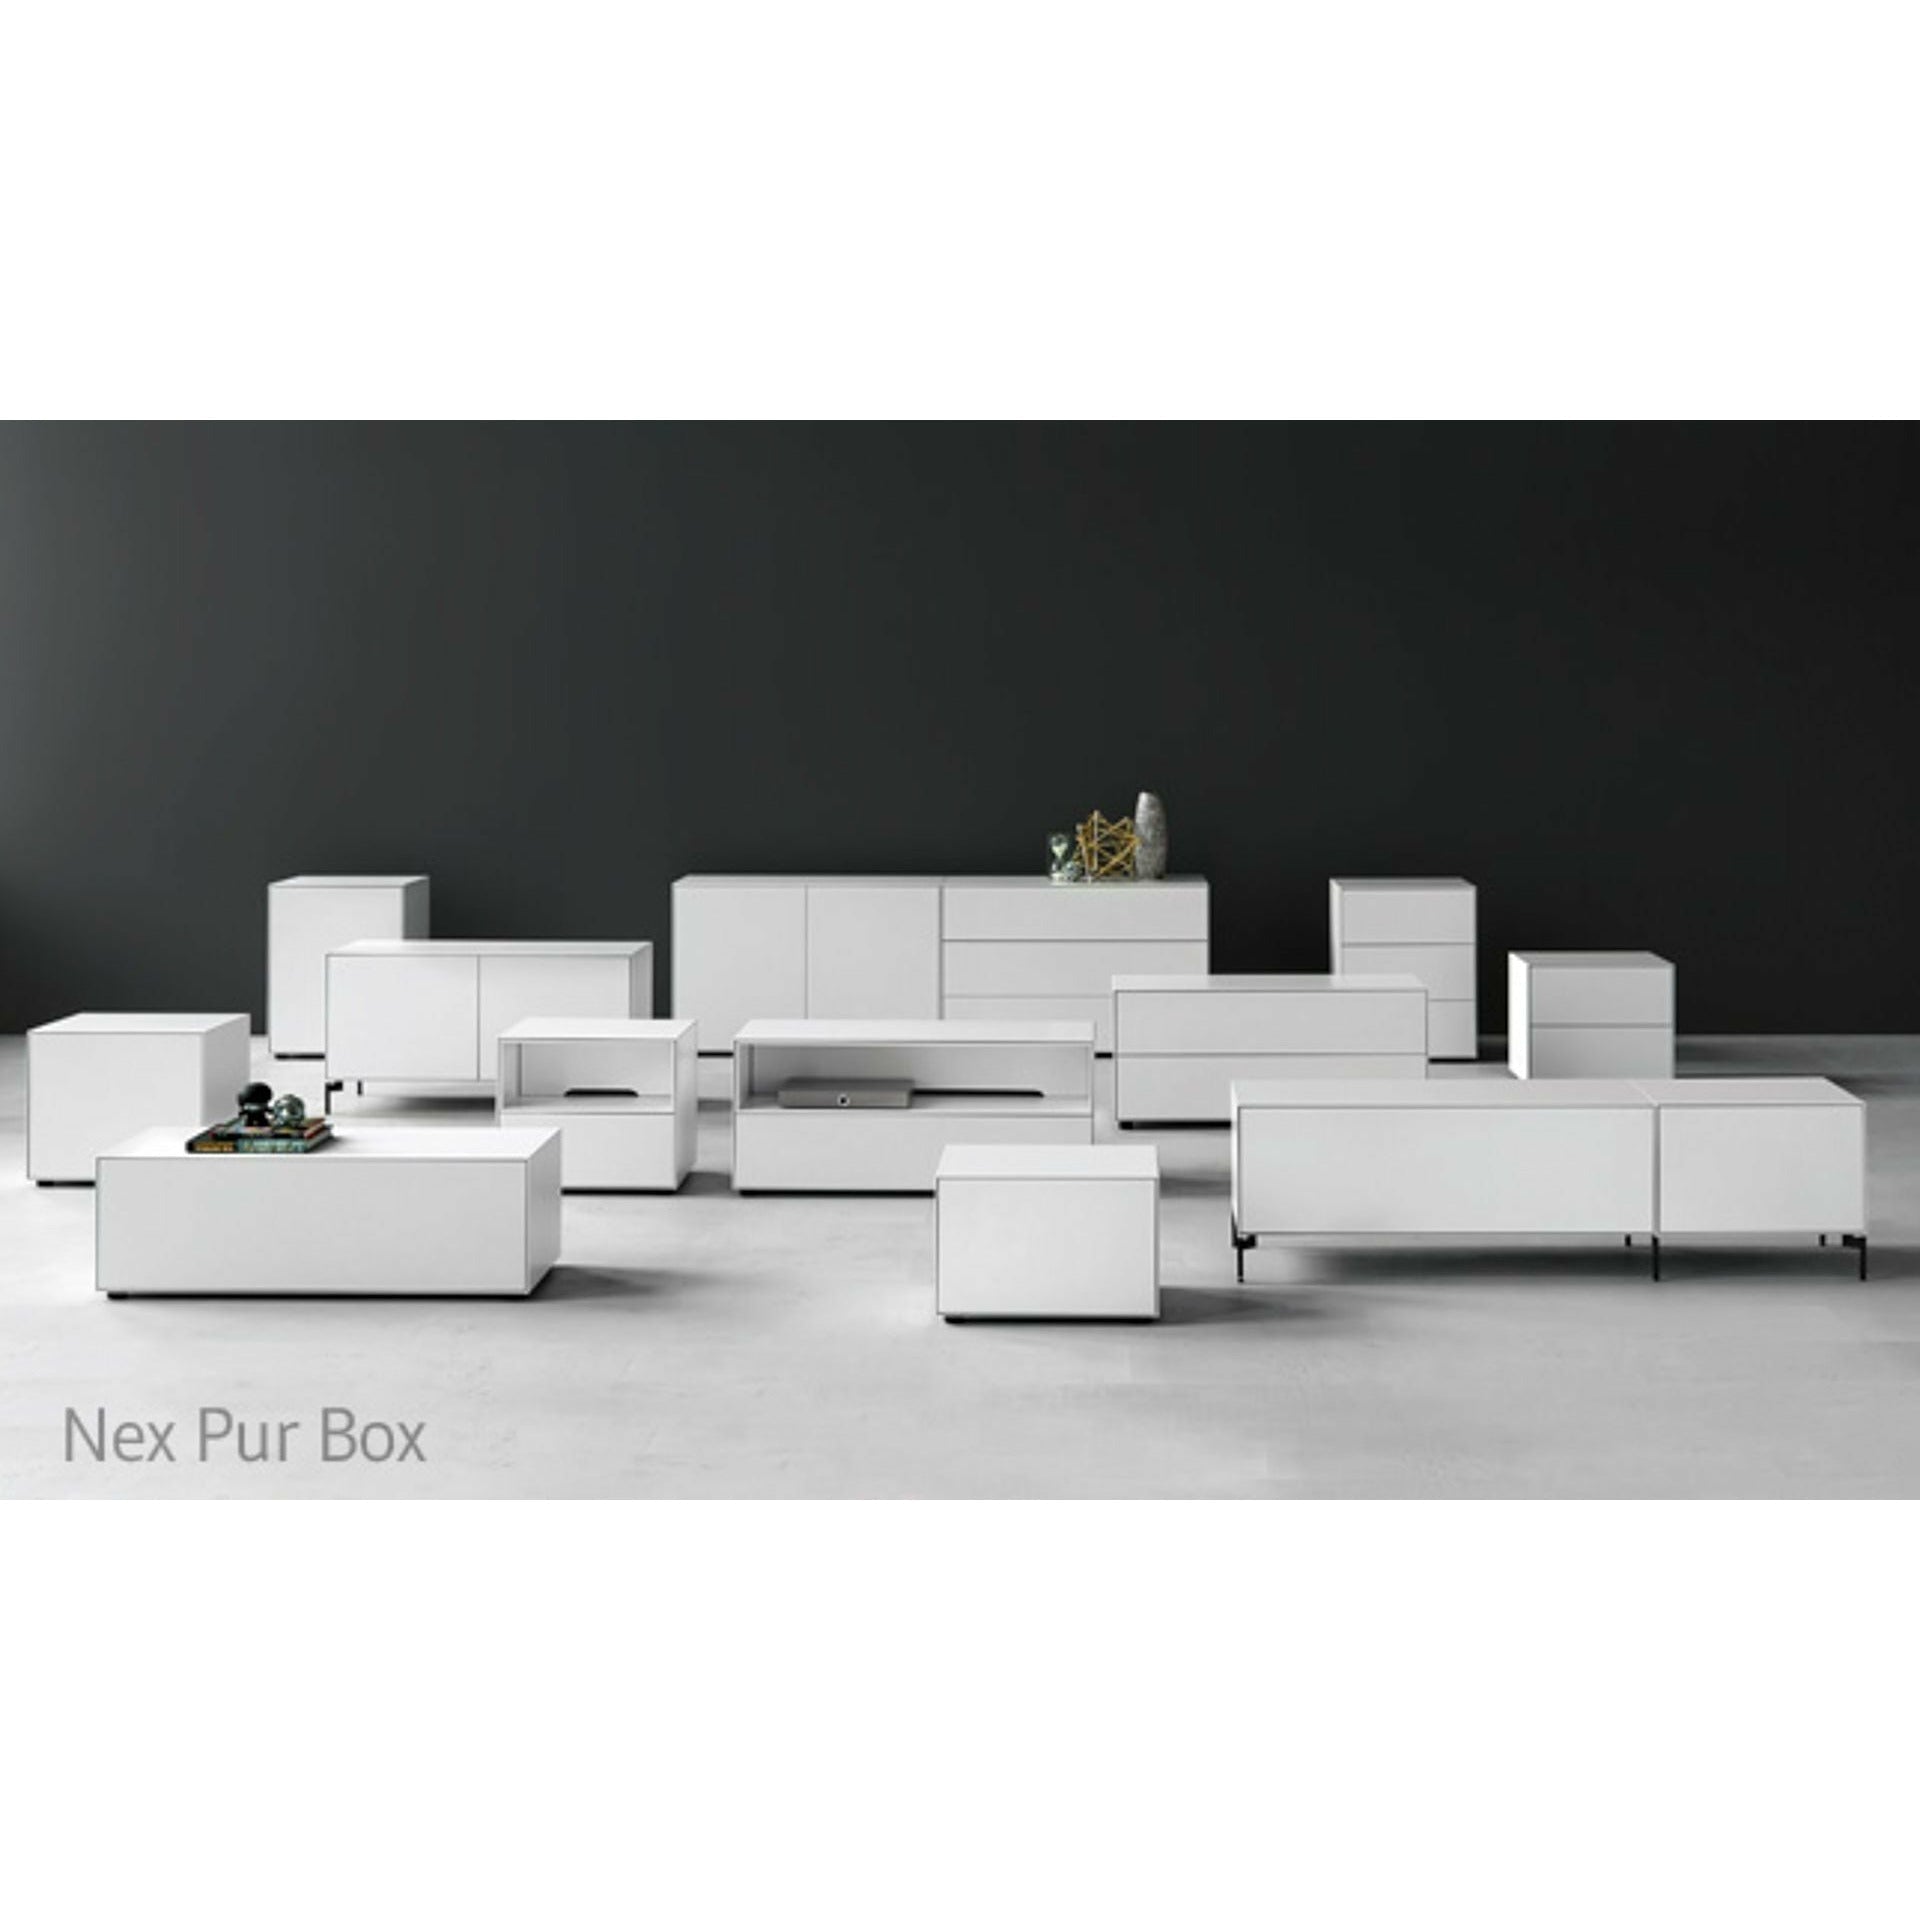 Piure NEX PUR BOX PORTE HX W 50x180 cm, 1 étagère